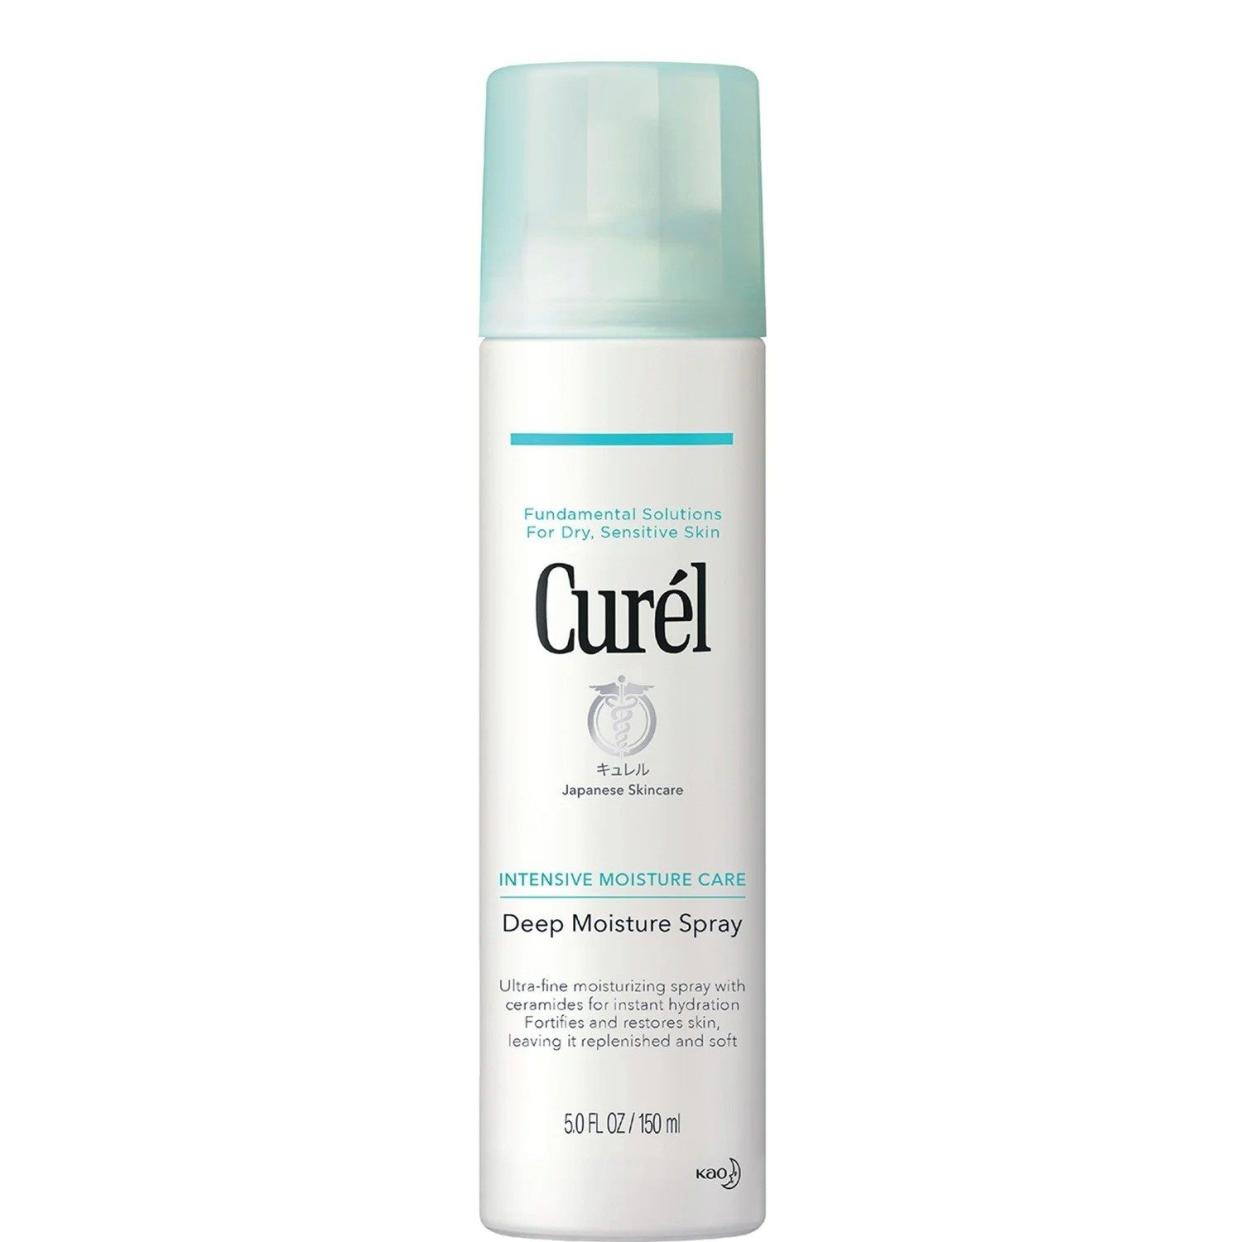 Curél Deep Moisture Spray for Sensitive Skin